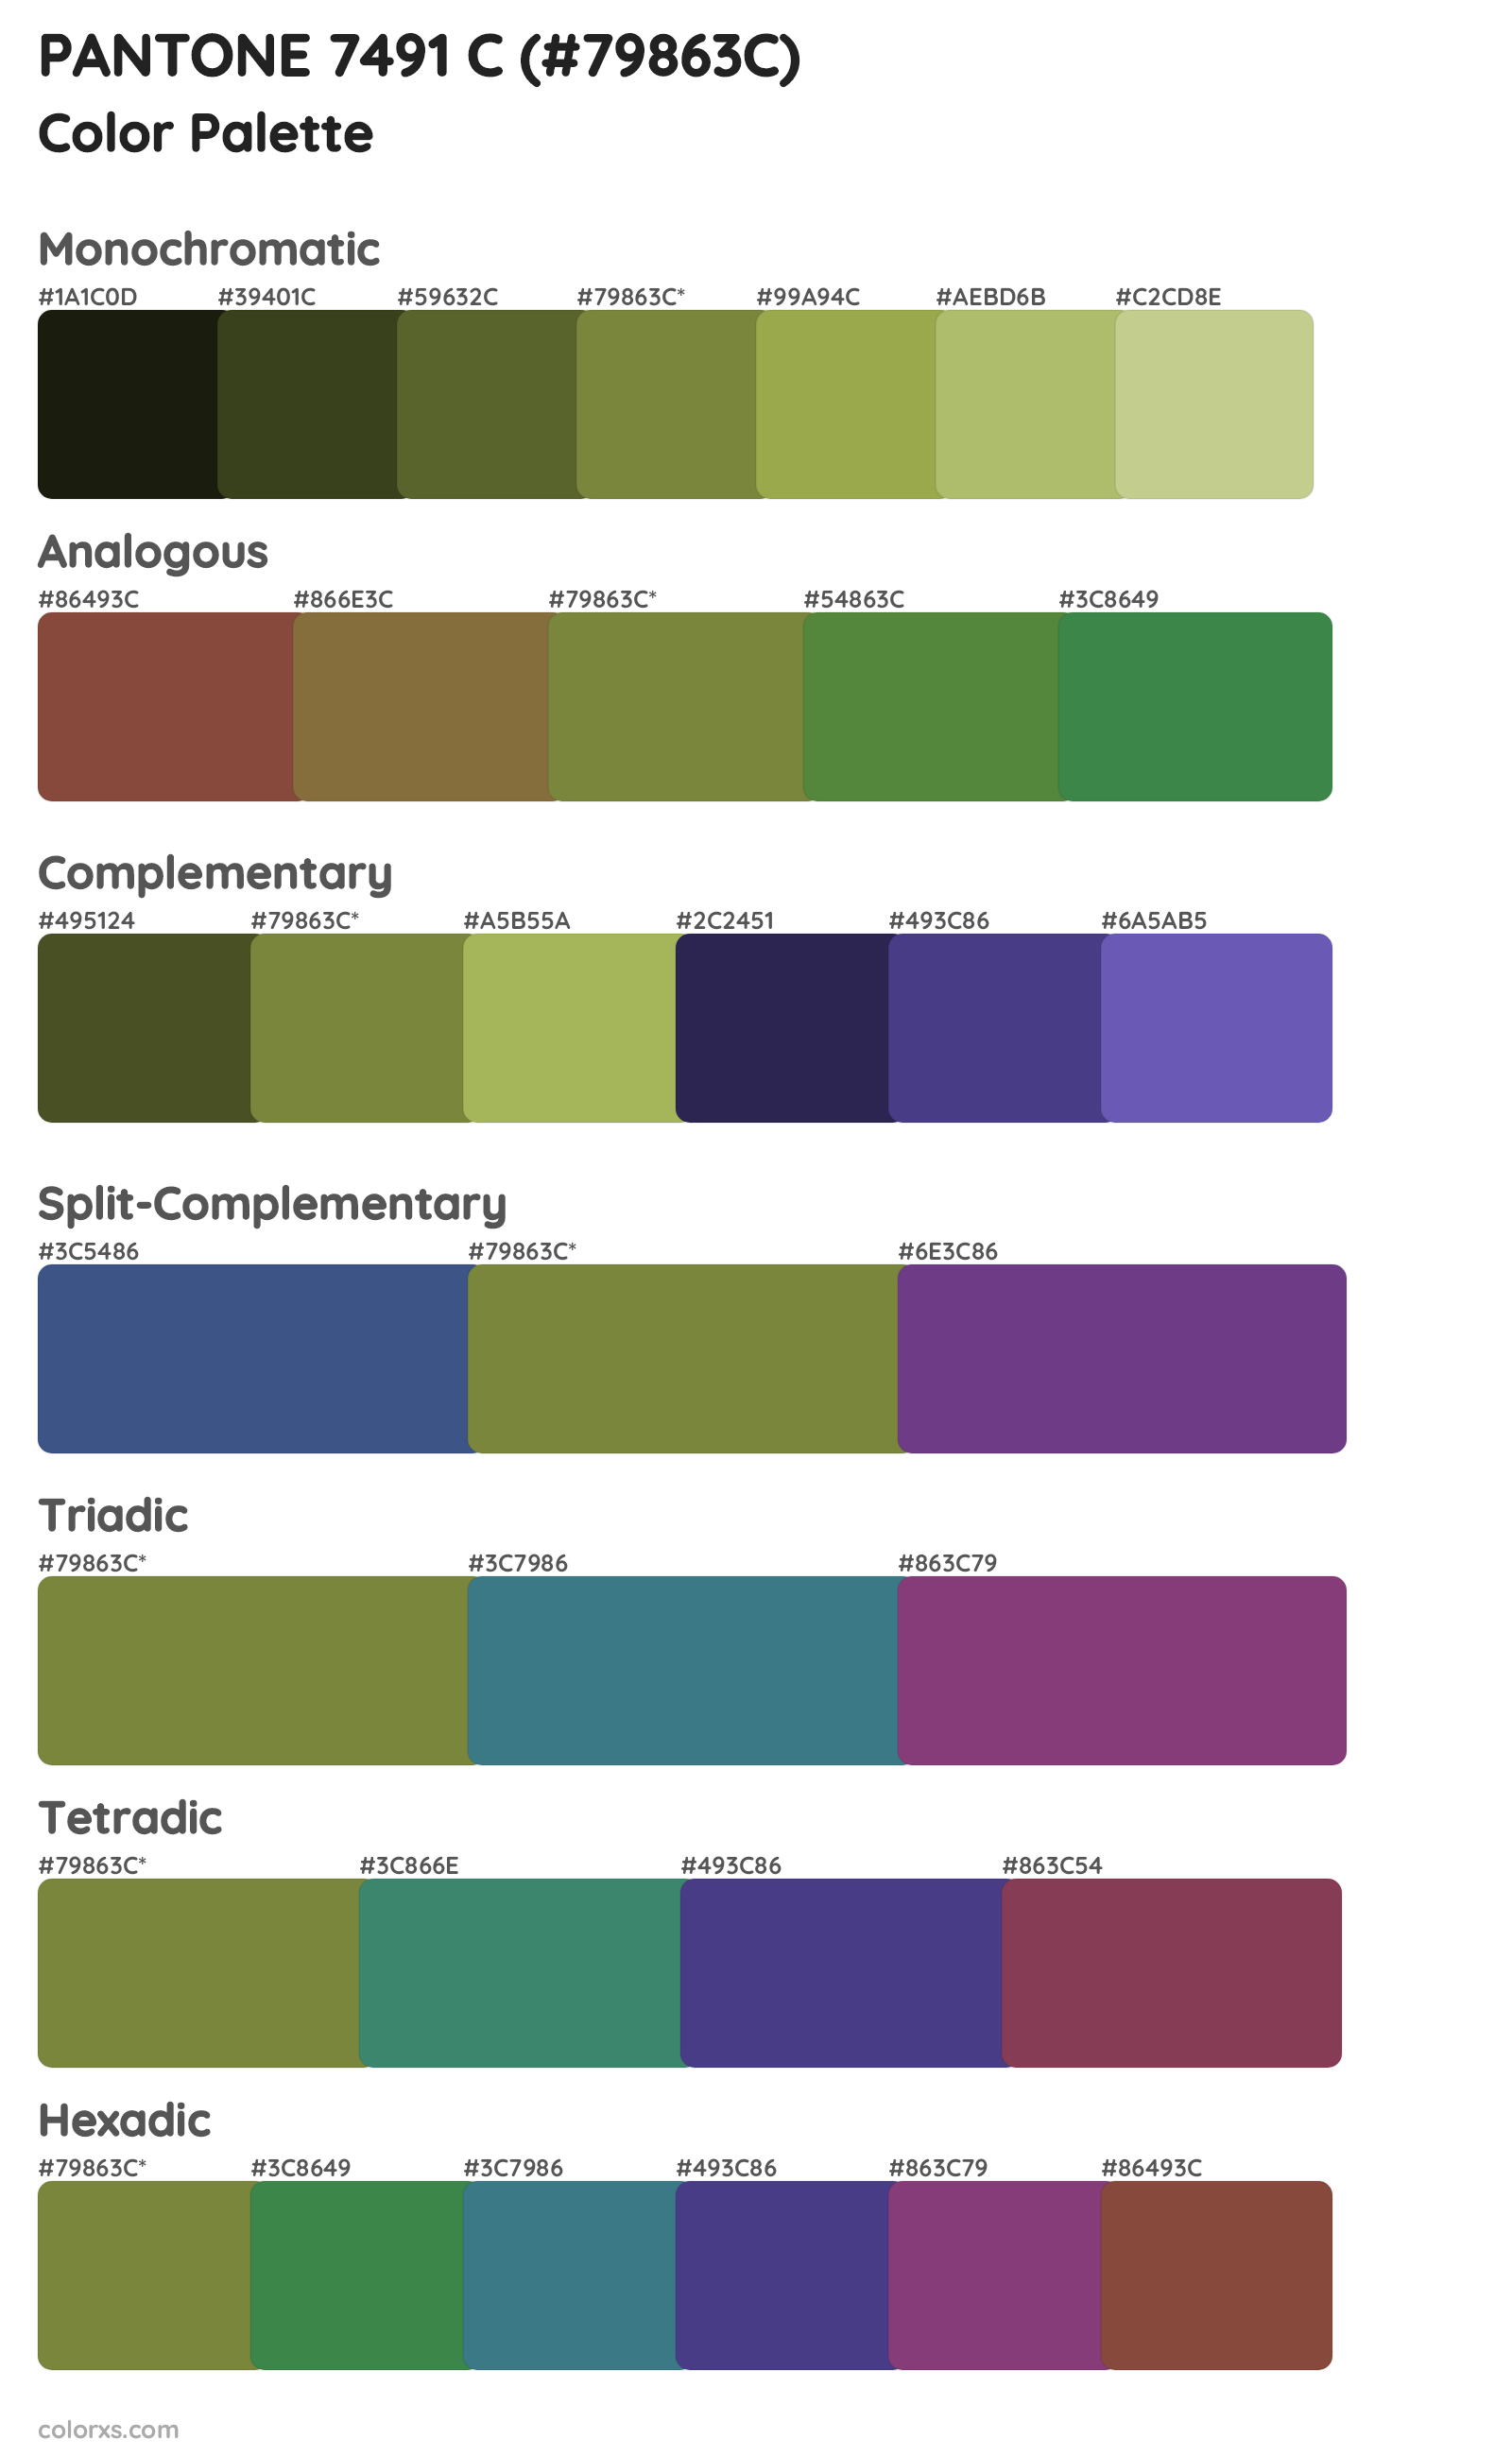 PANTONE 7491 C Color Scheme Palettes